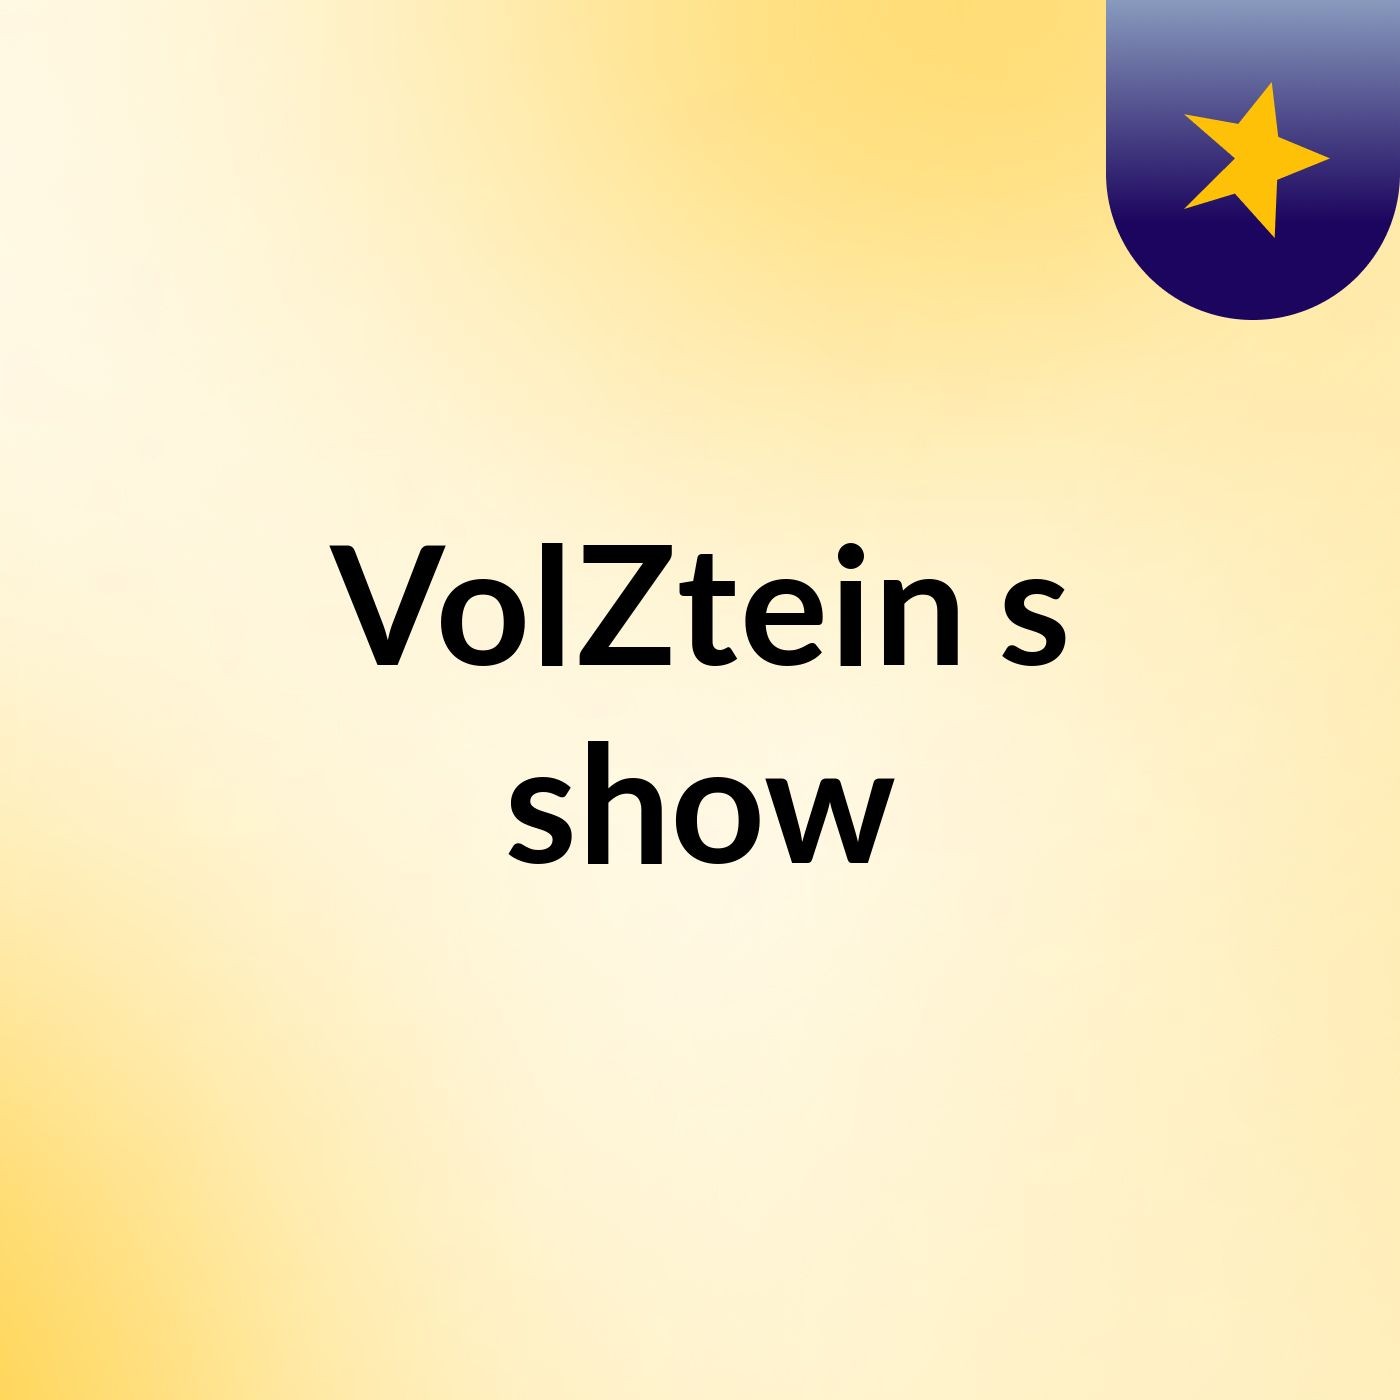 VolZtein's show